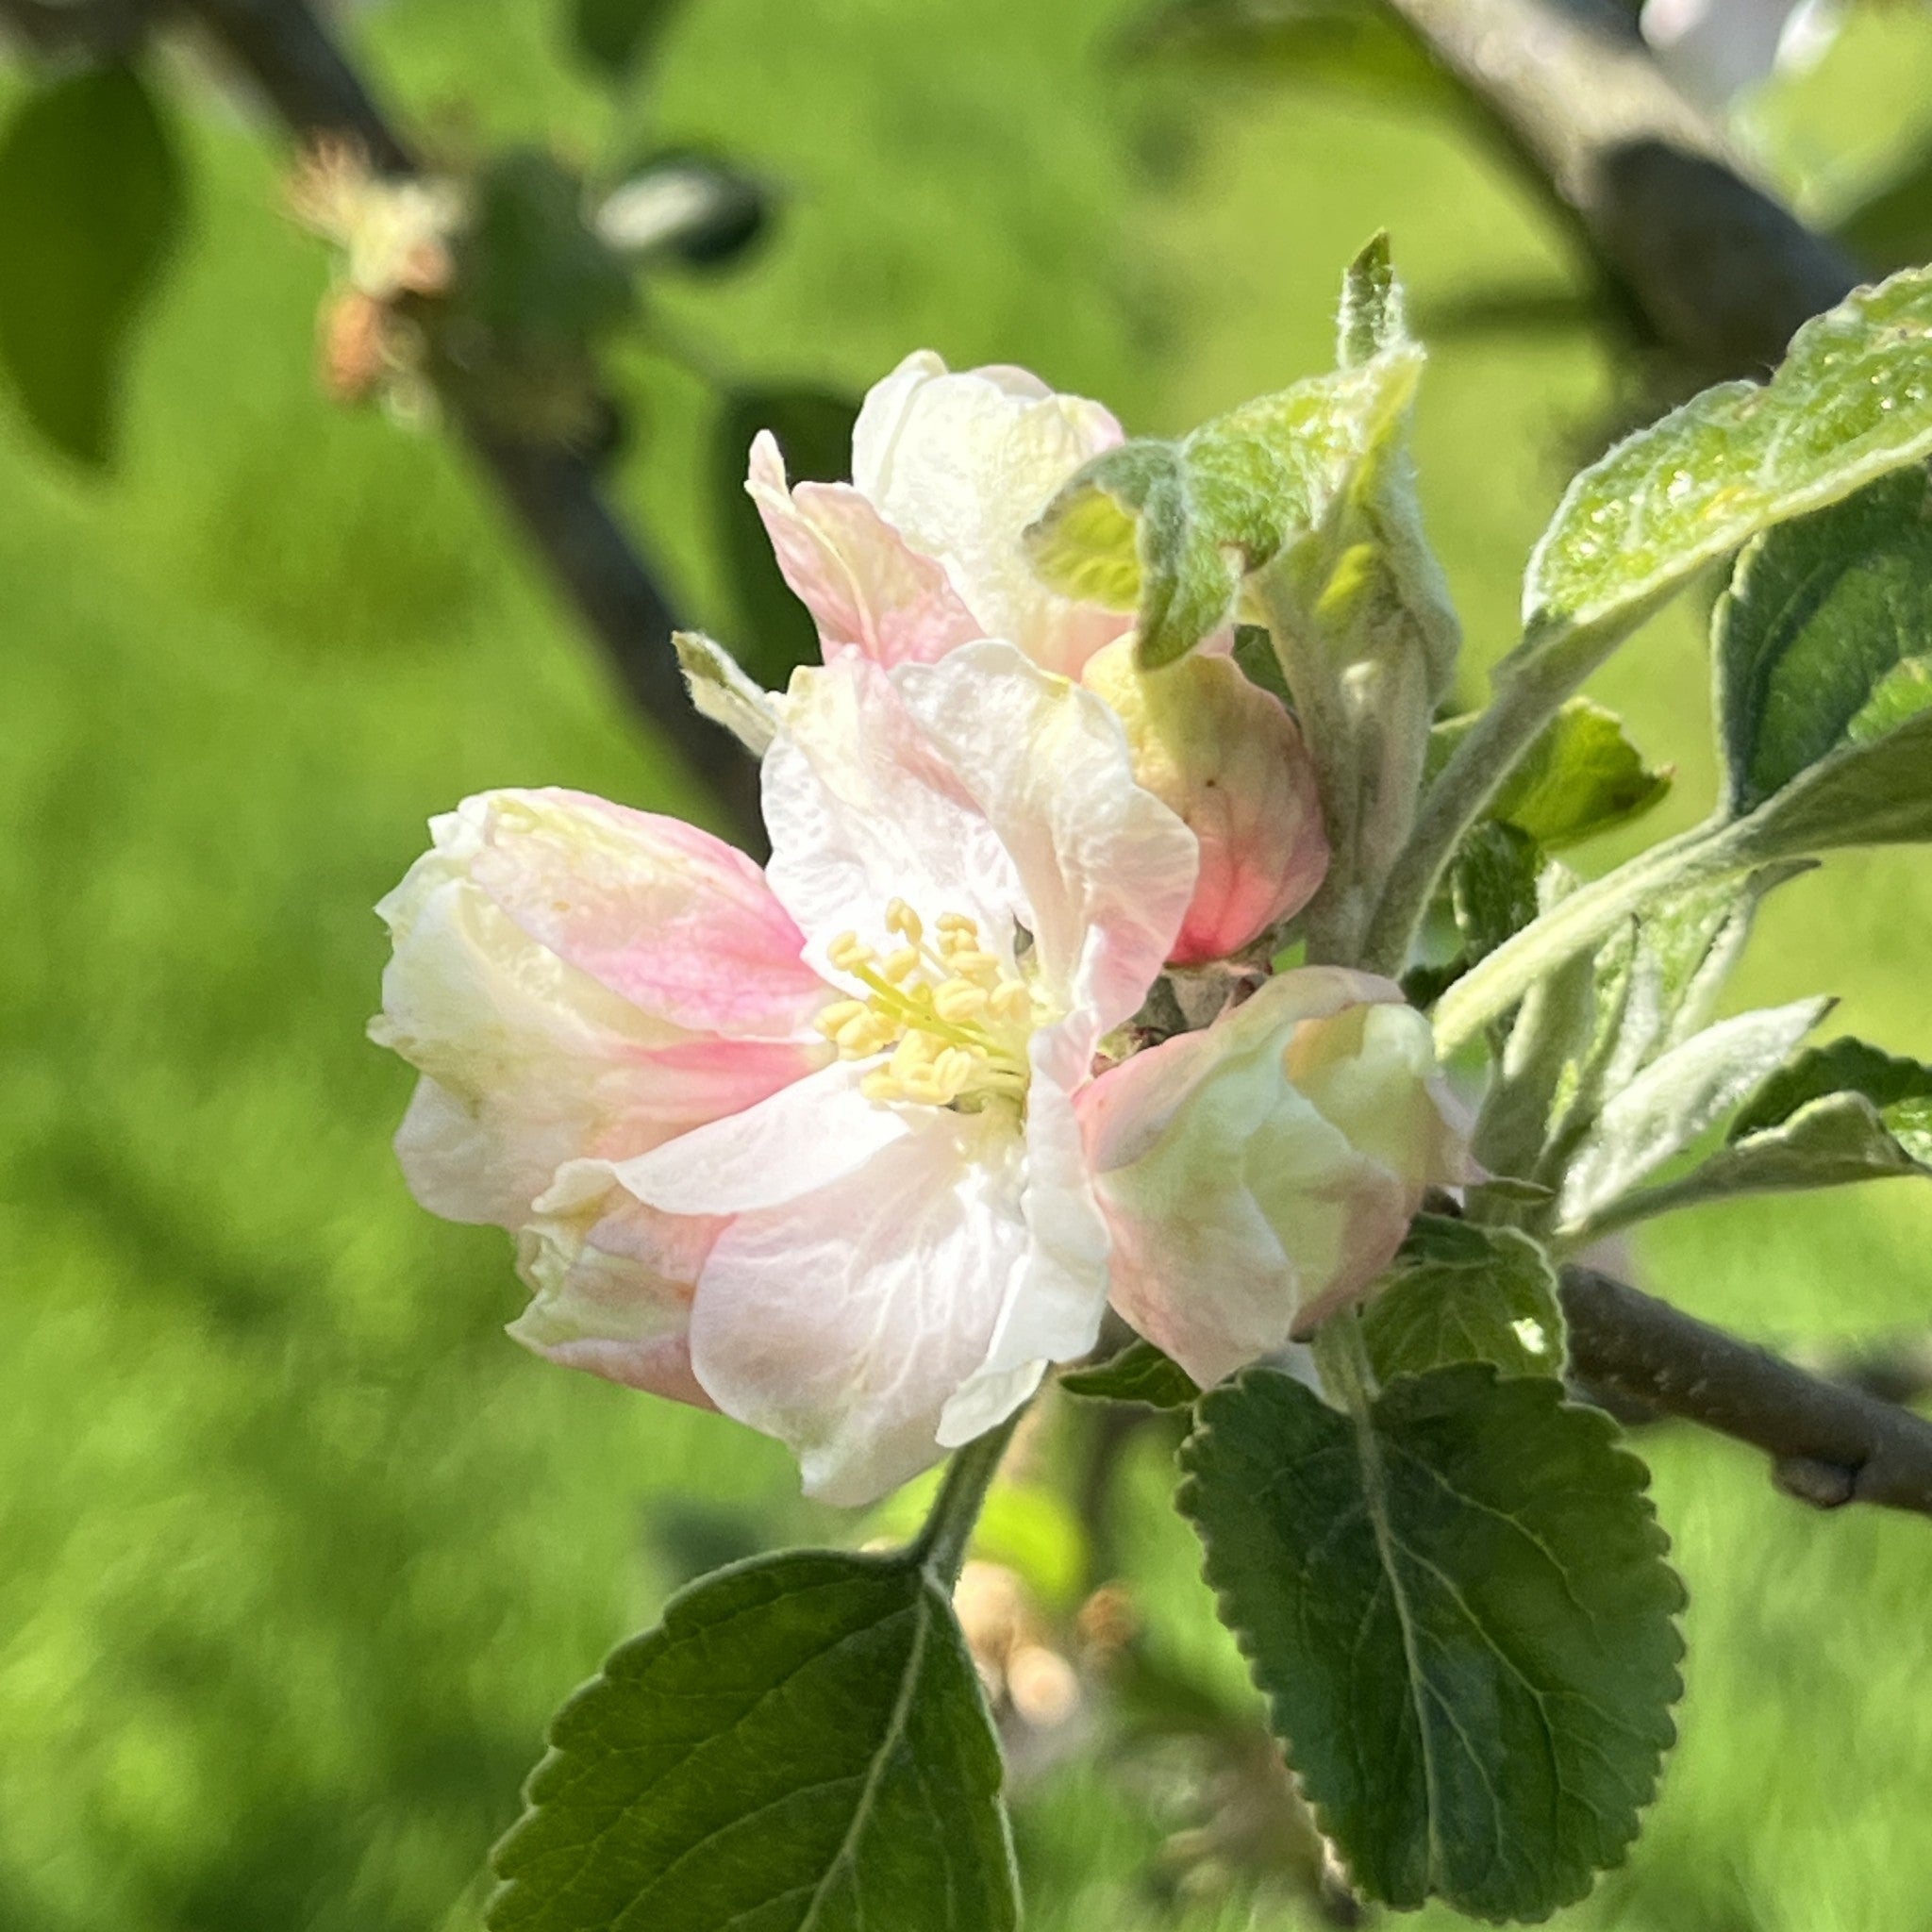 Duke of Devonshire apple tree blossom